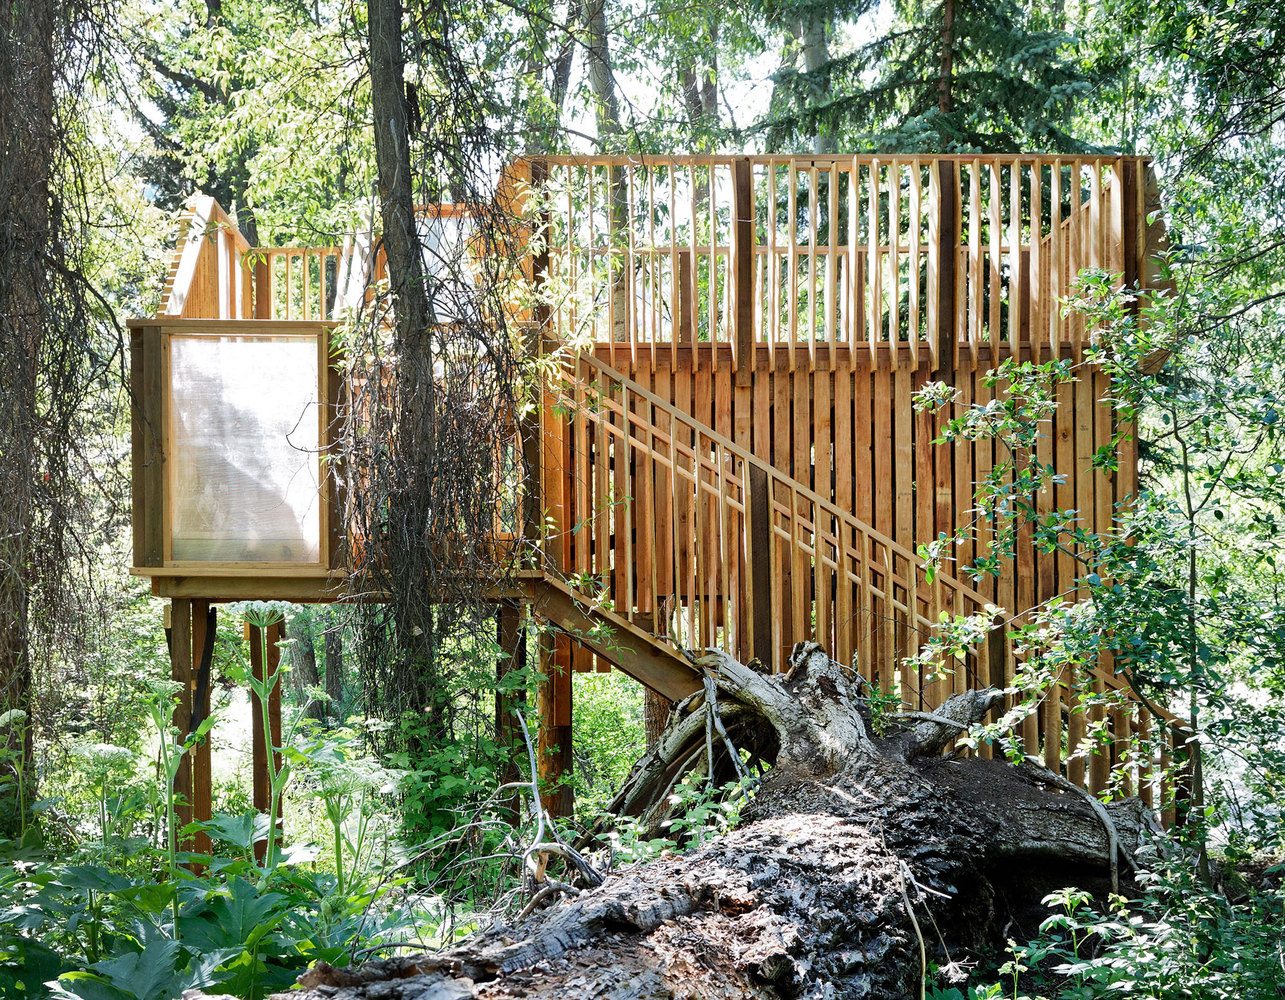 Bu ağaç ev açık hava sınıfı olarak tasarlandı